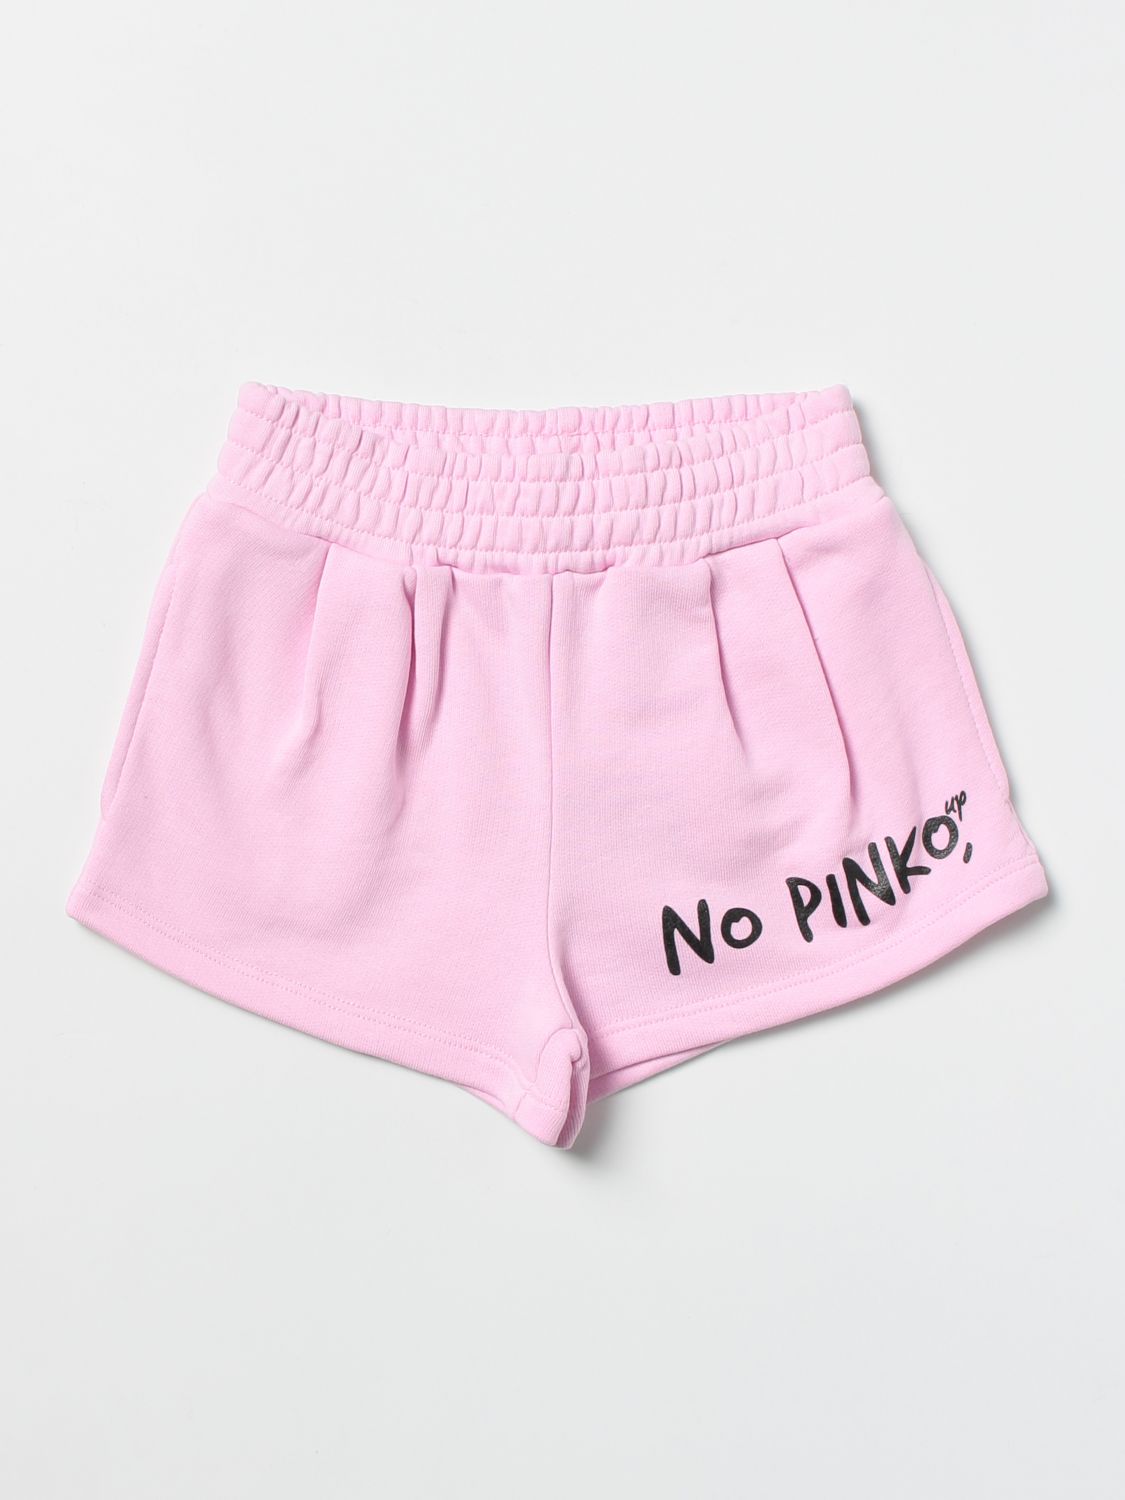 Short Pinko: Pinko short for girls pink 1